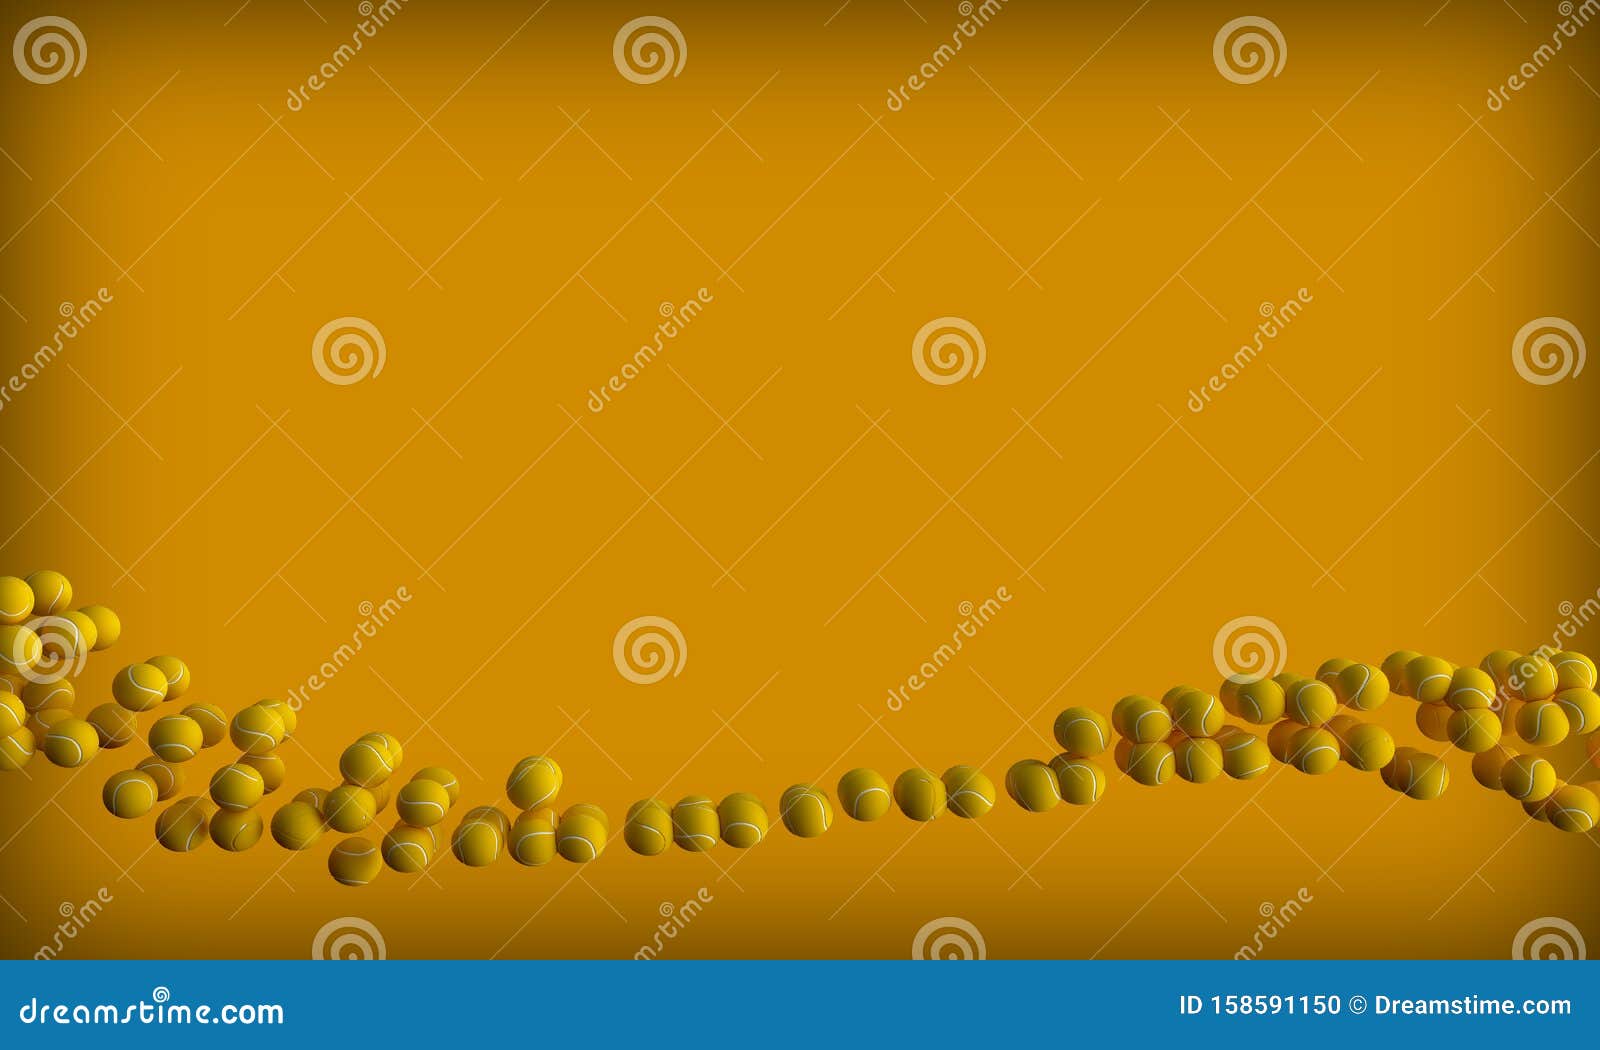 following tennisball yellow backround